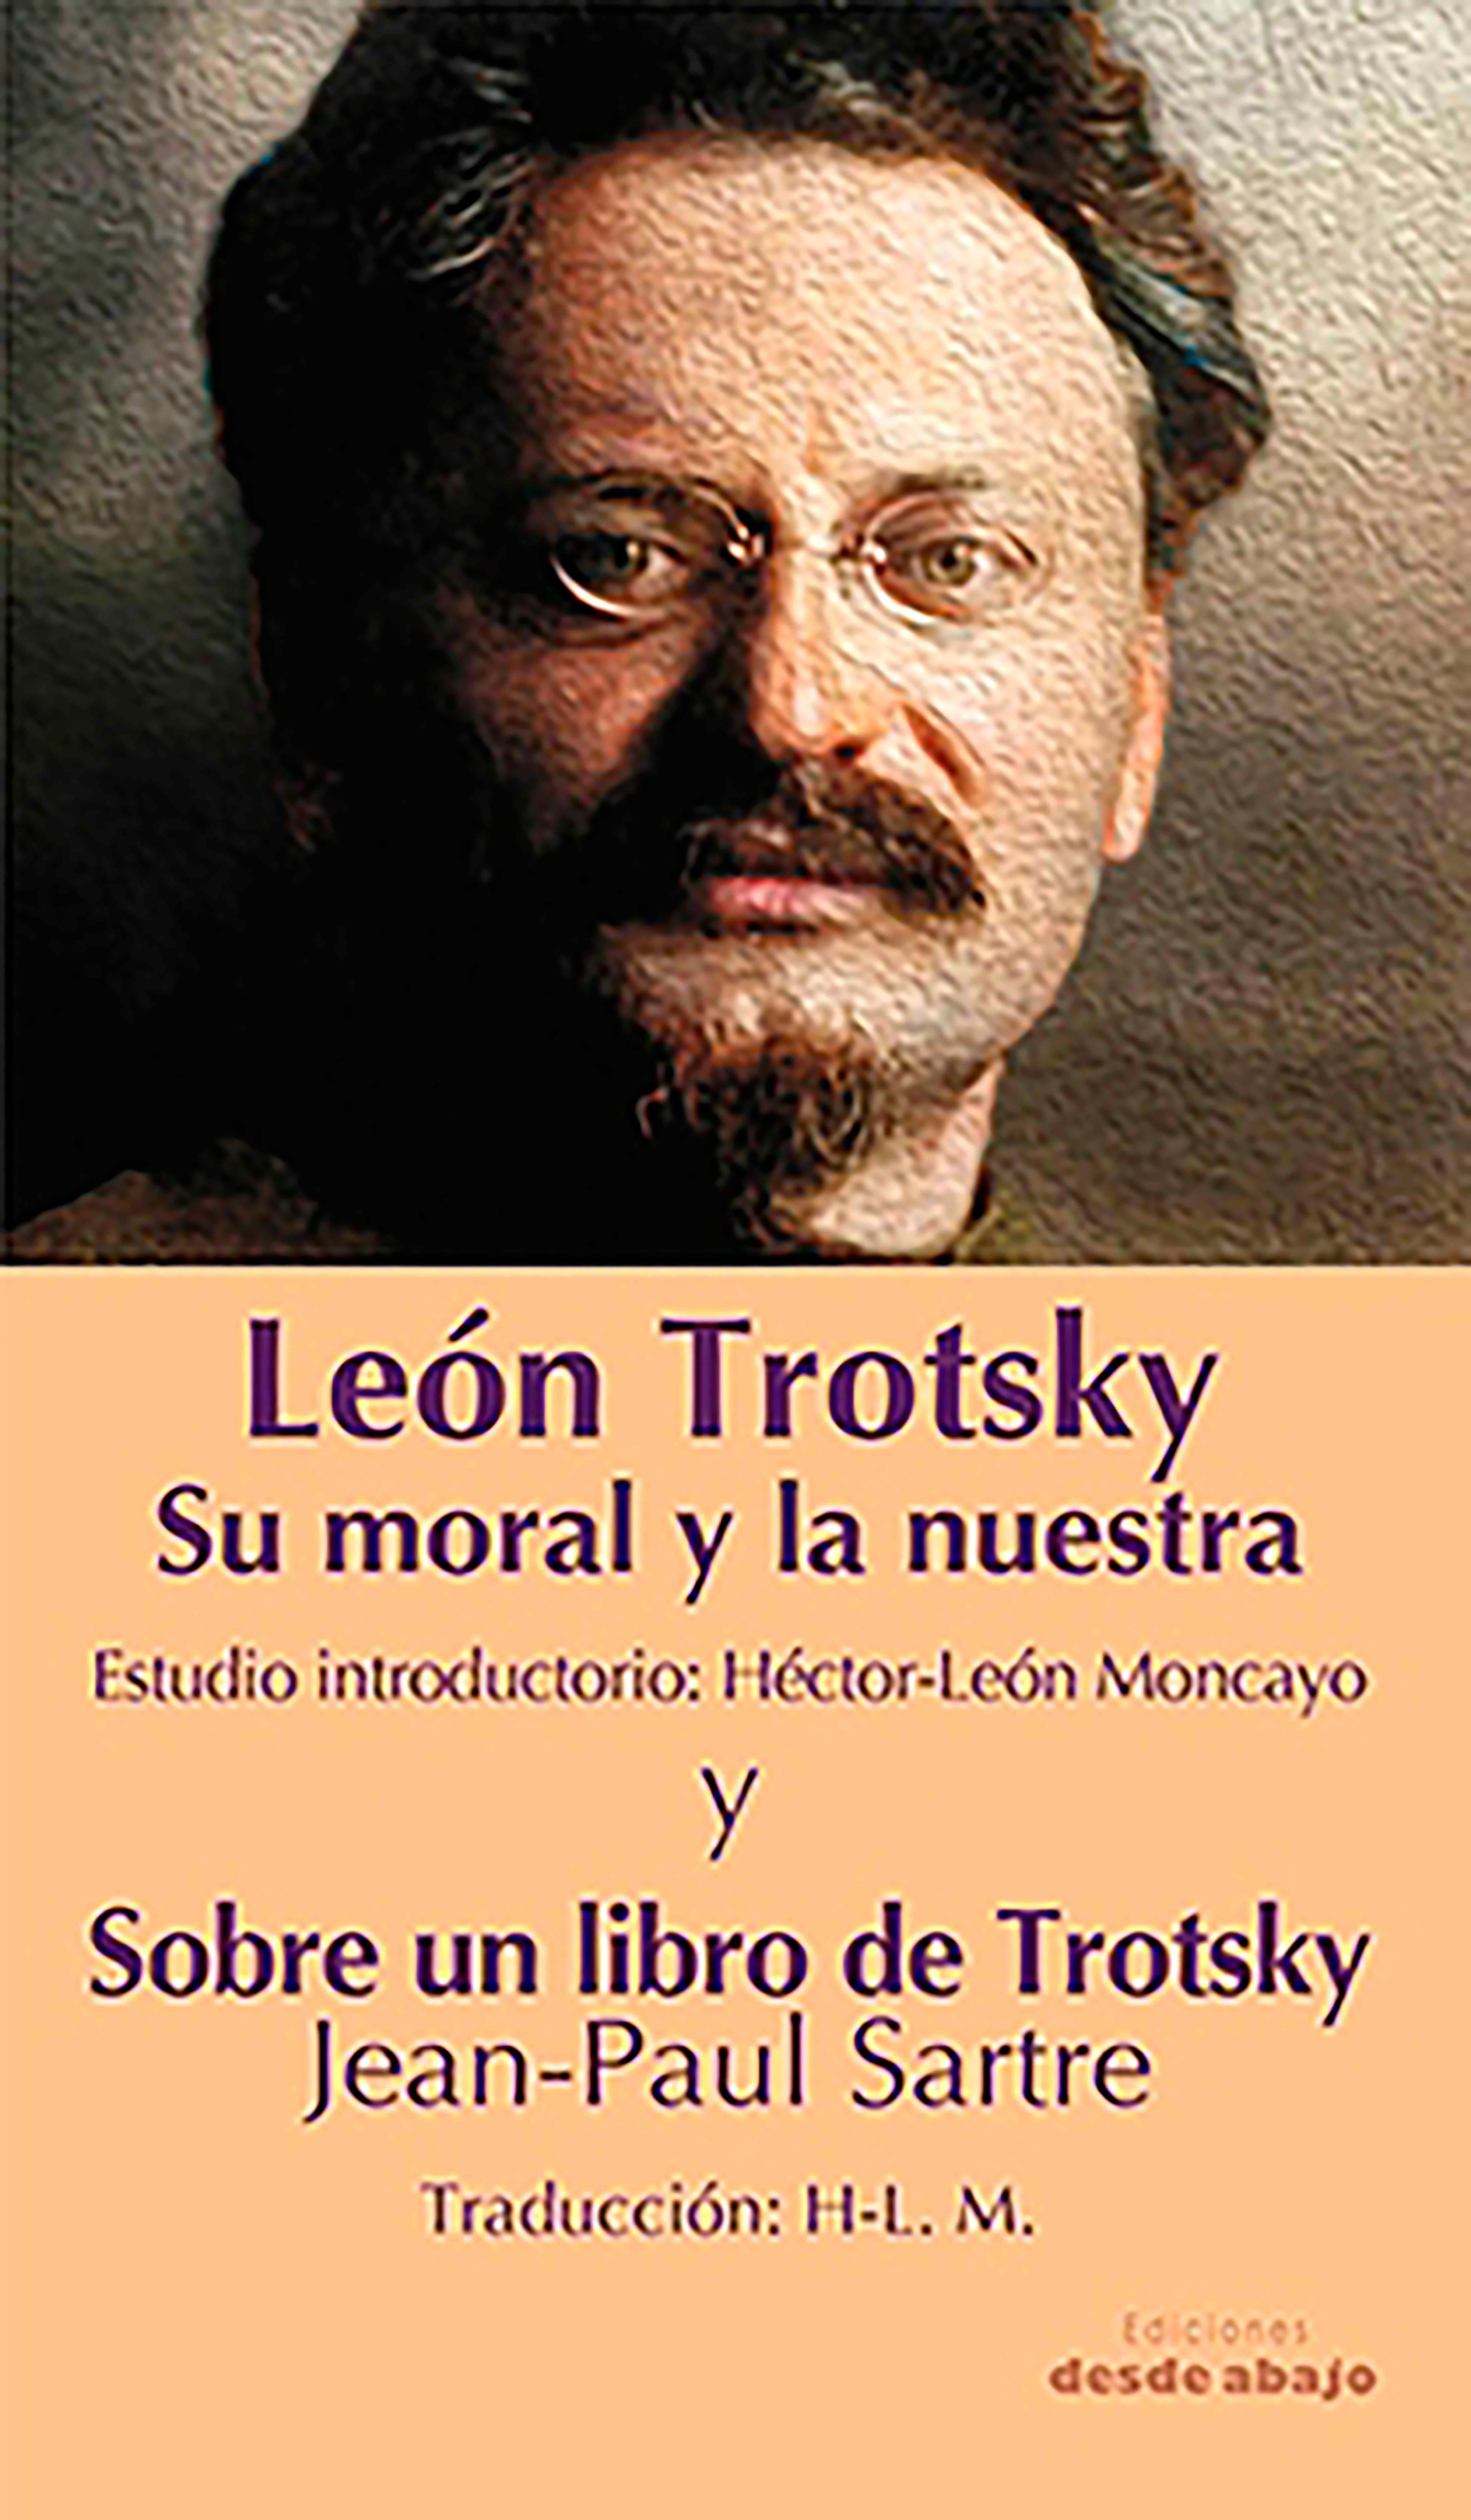 León Trotsky Su moral y la nuestra. Estudio introductorio: Héctor-León Moncayo